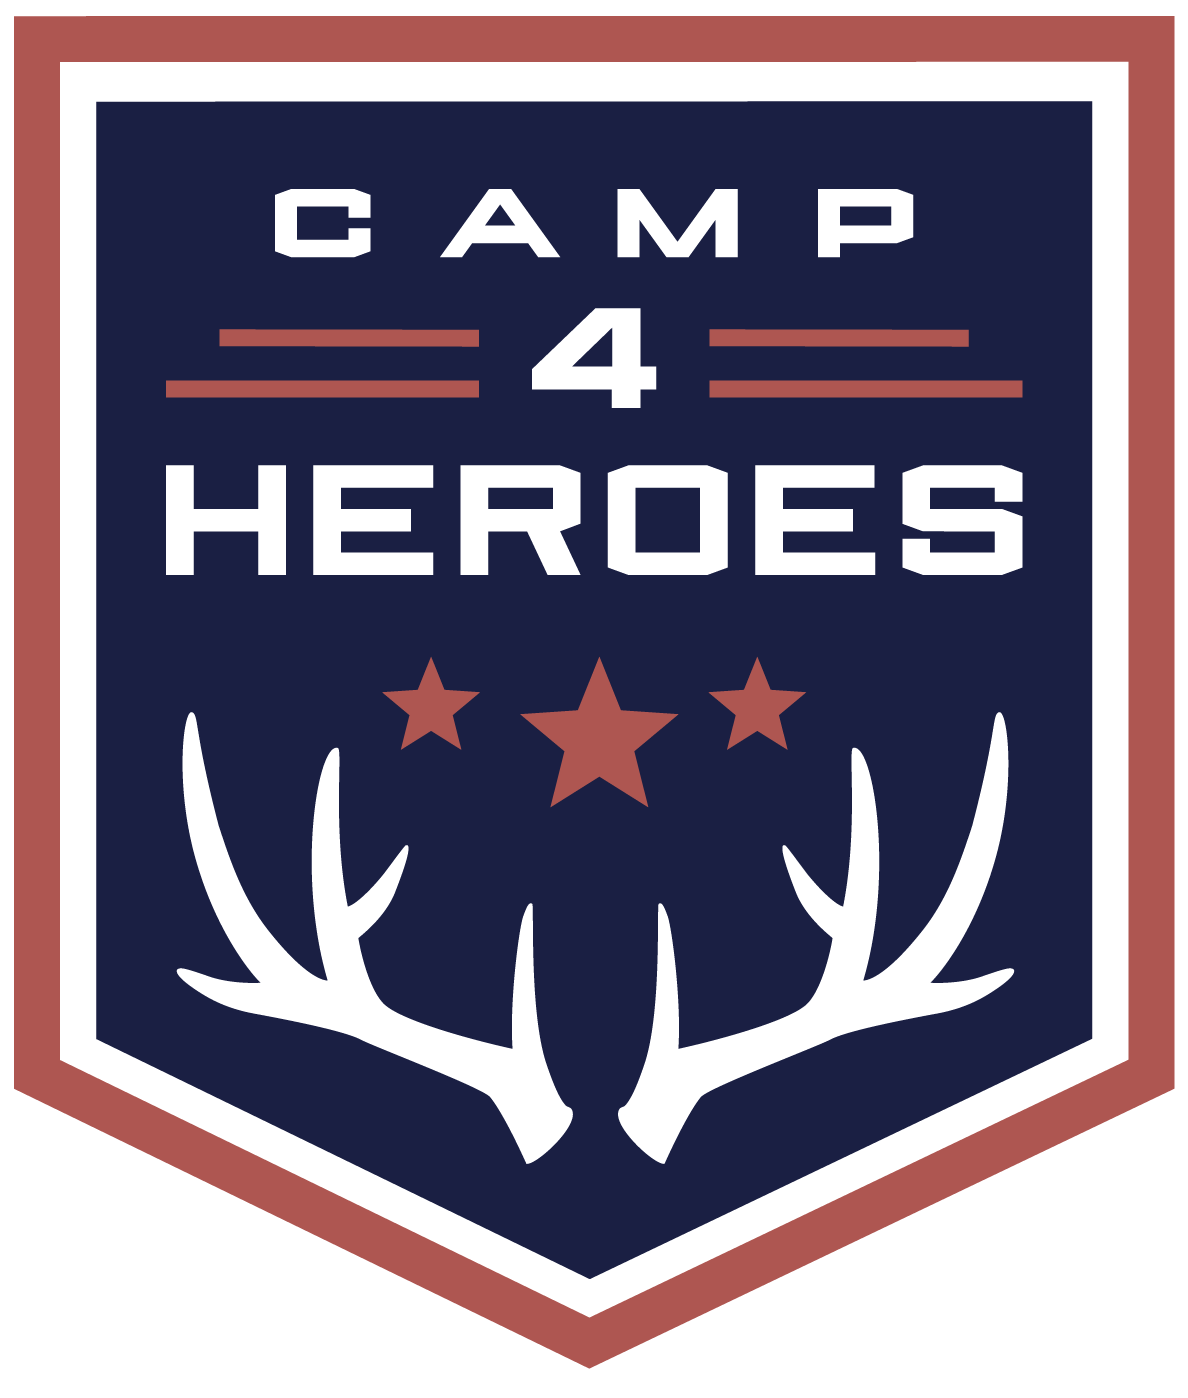 Camp 4 Heroes